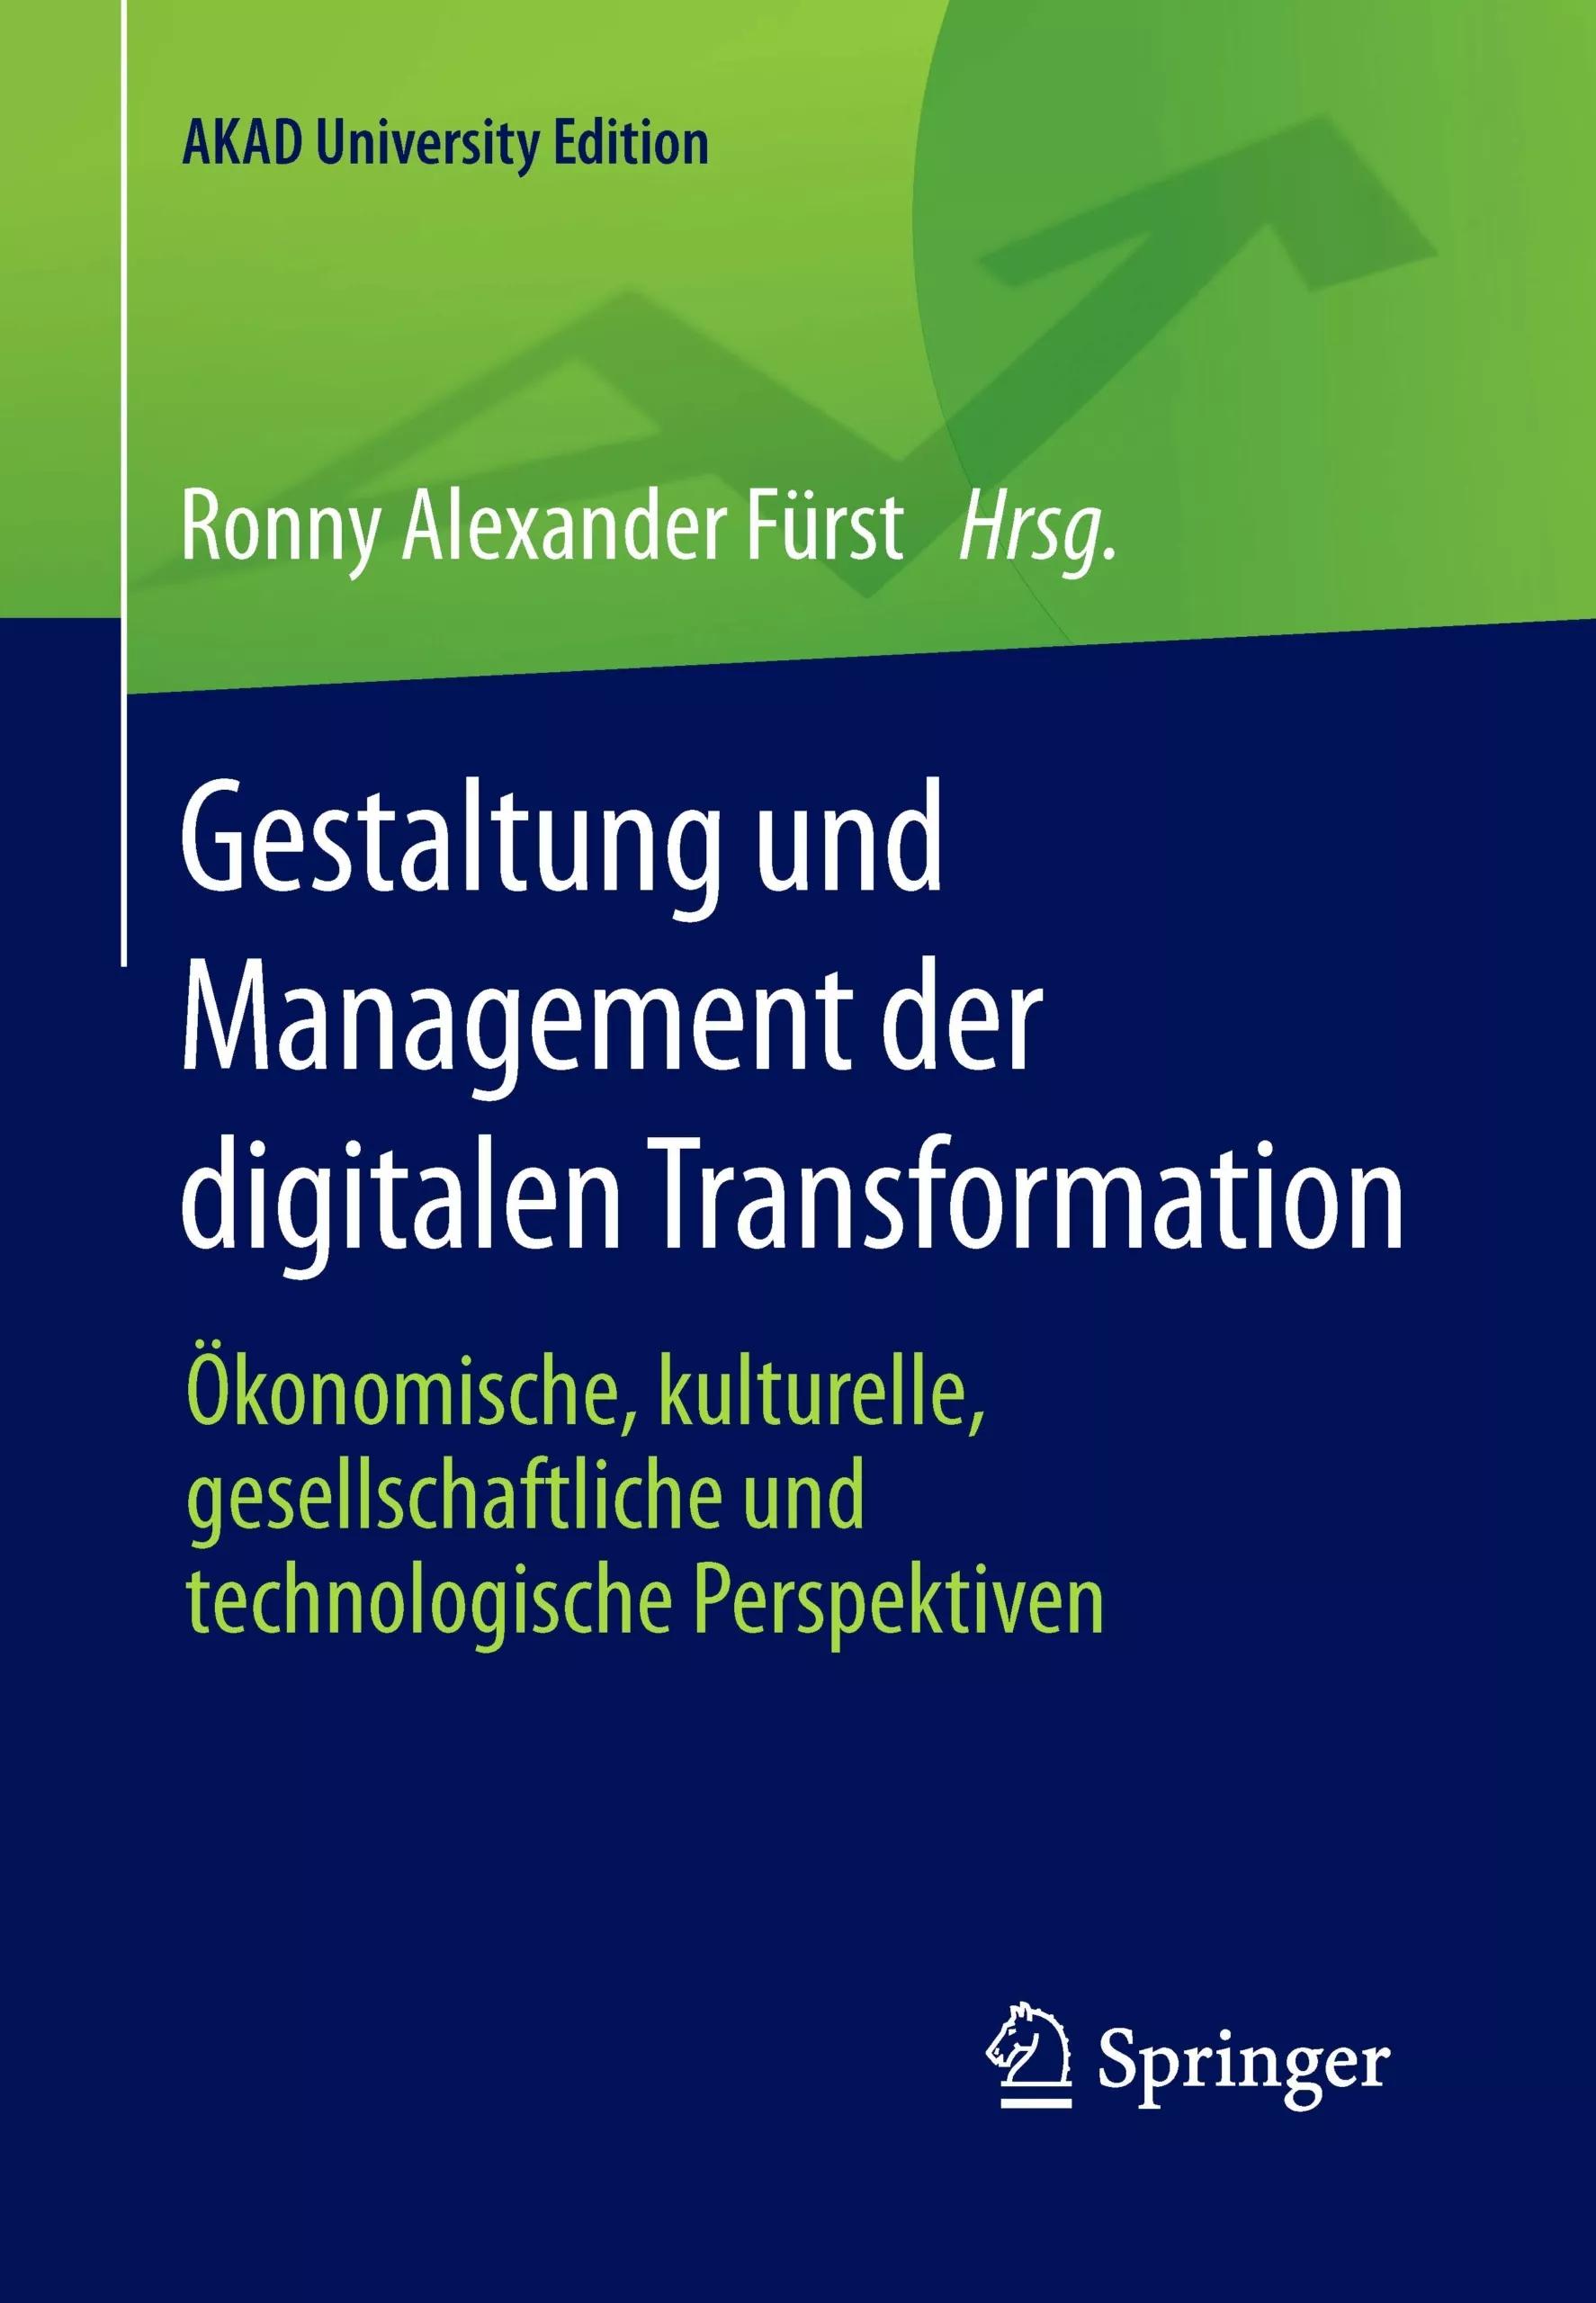 Das Cover des Buches Gestatug und Management der digitalen Transformation.